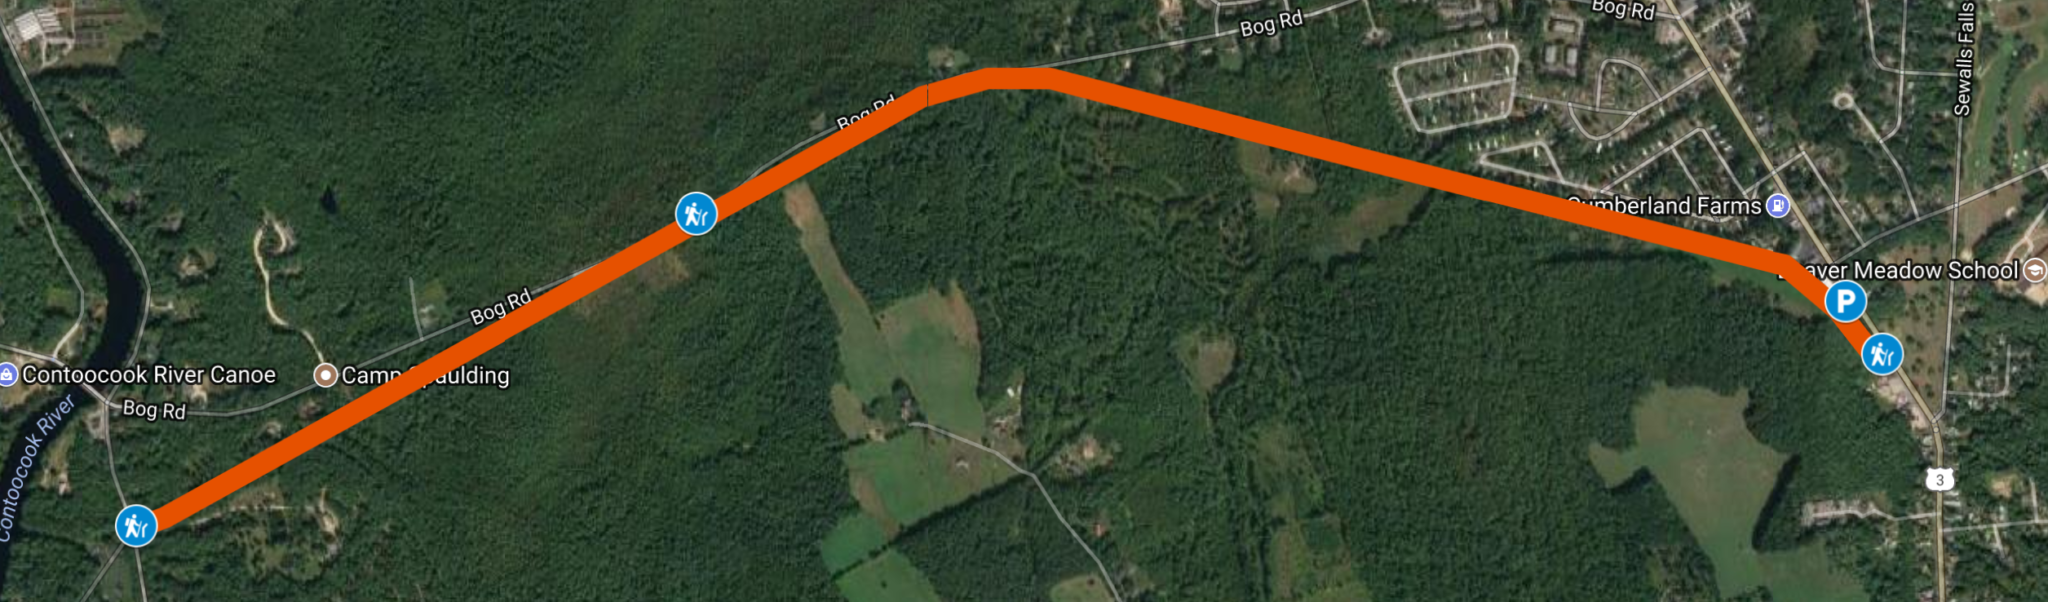 2.5 mile segment of Rail Trail in Concord NH